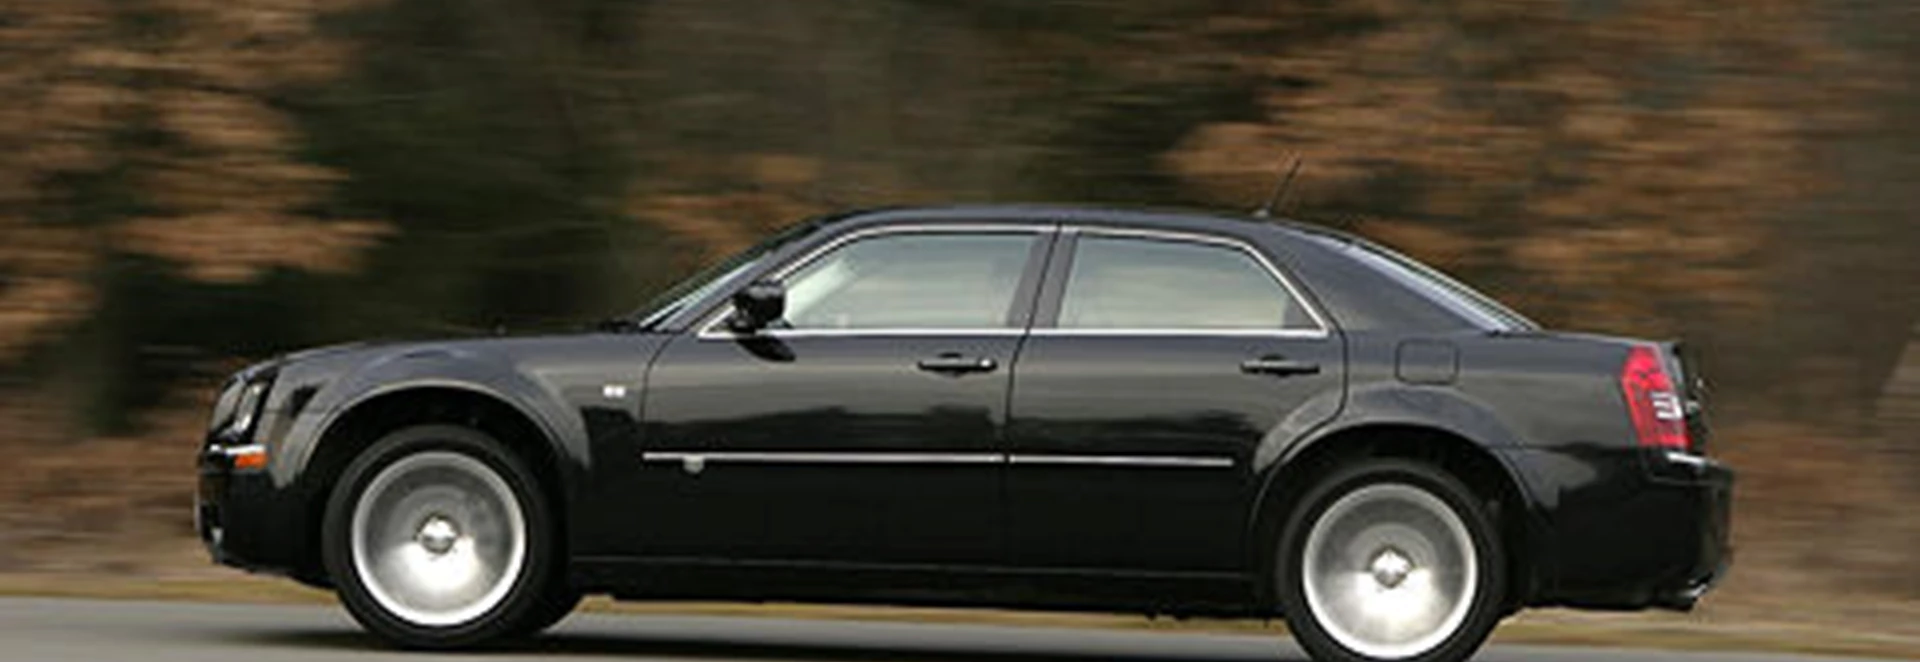 Chrysler 300C 5.7 Hemi V8 And 3.5 V6 